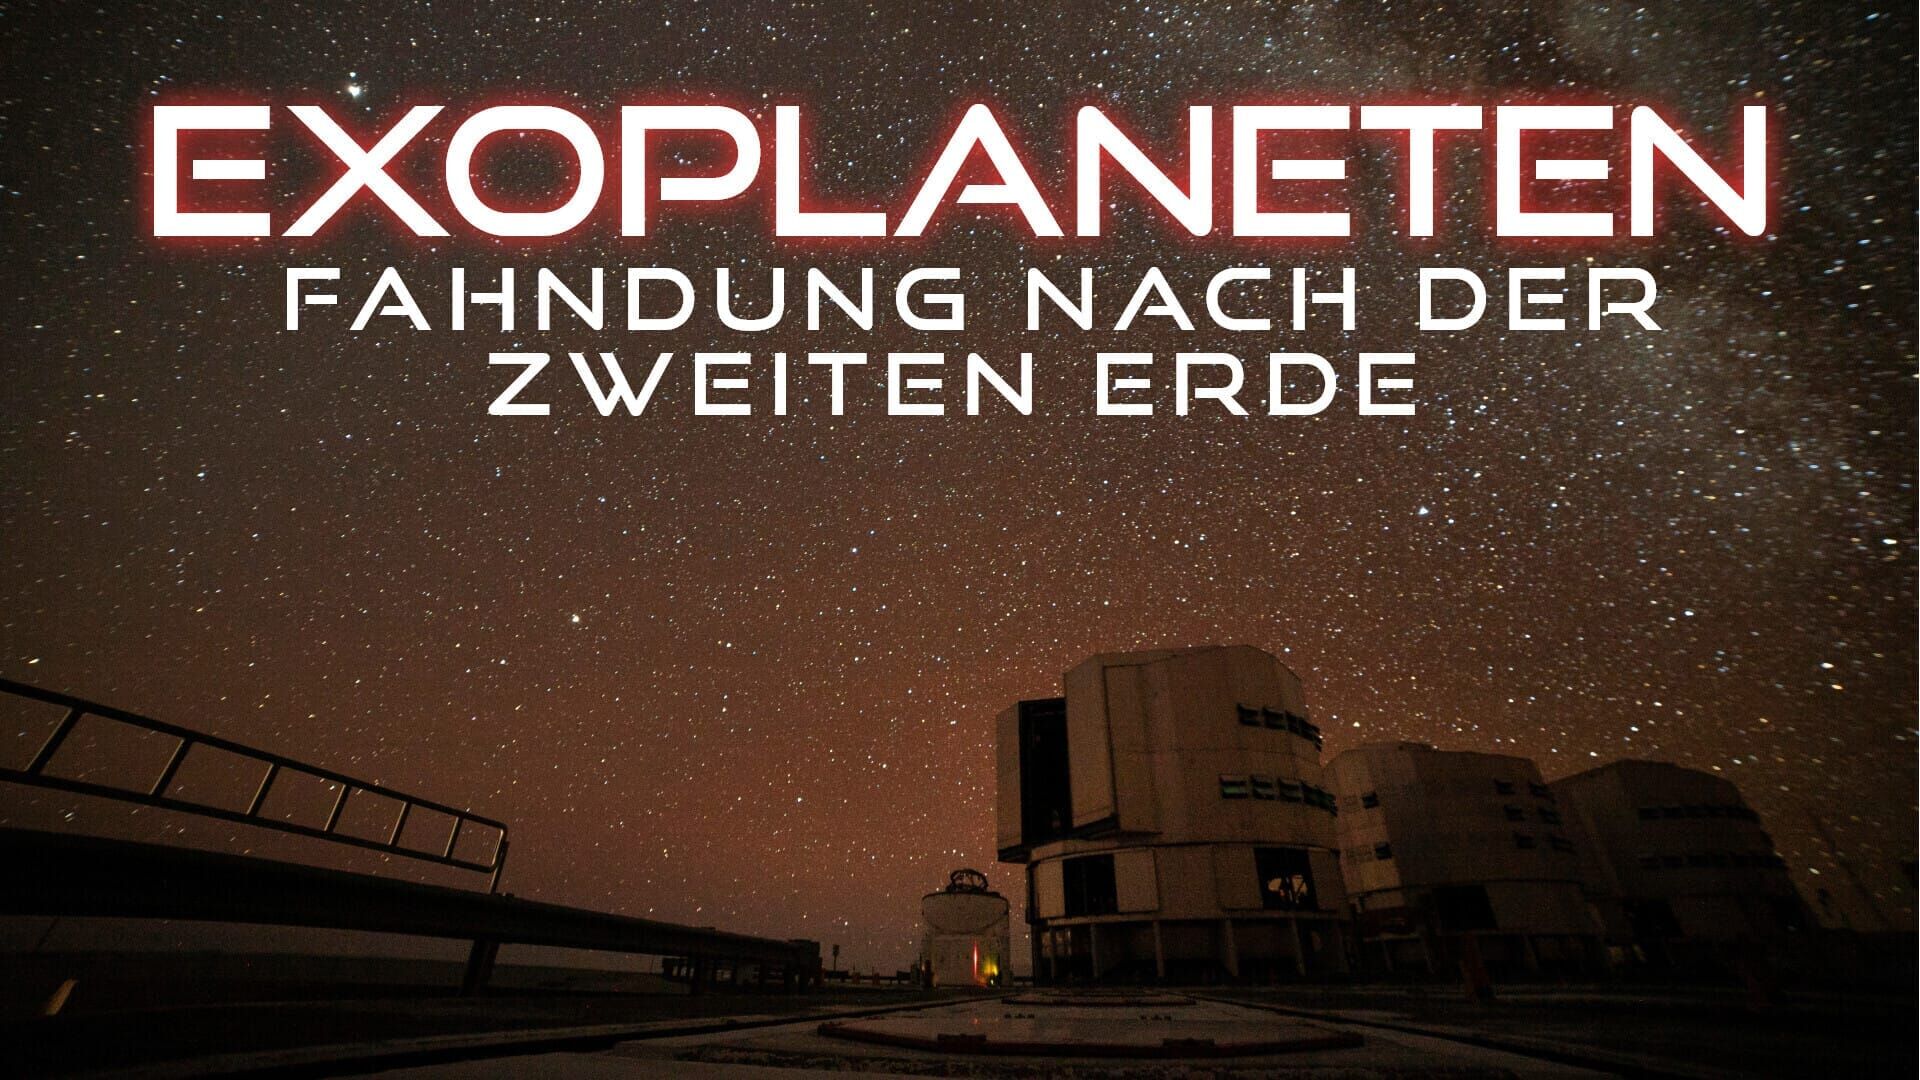 Exoplaneten – Fahndung nach der zweiten Erde